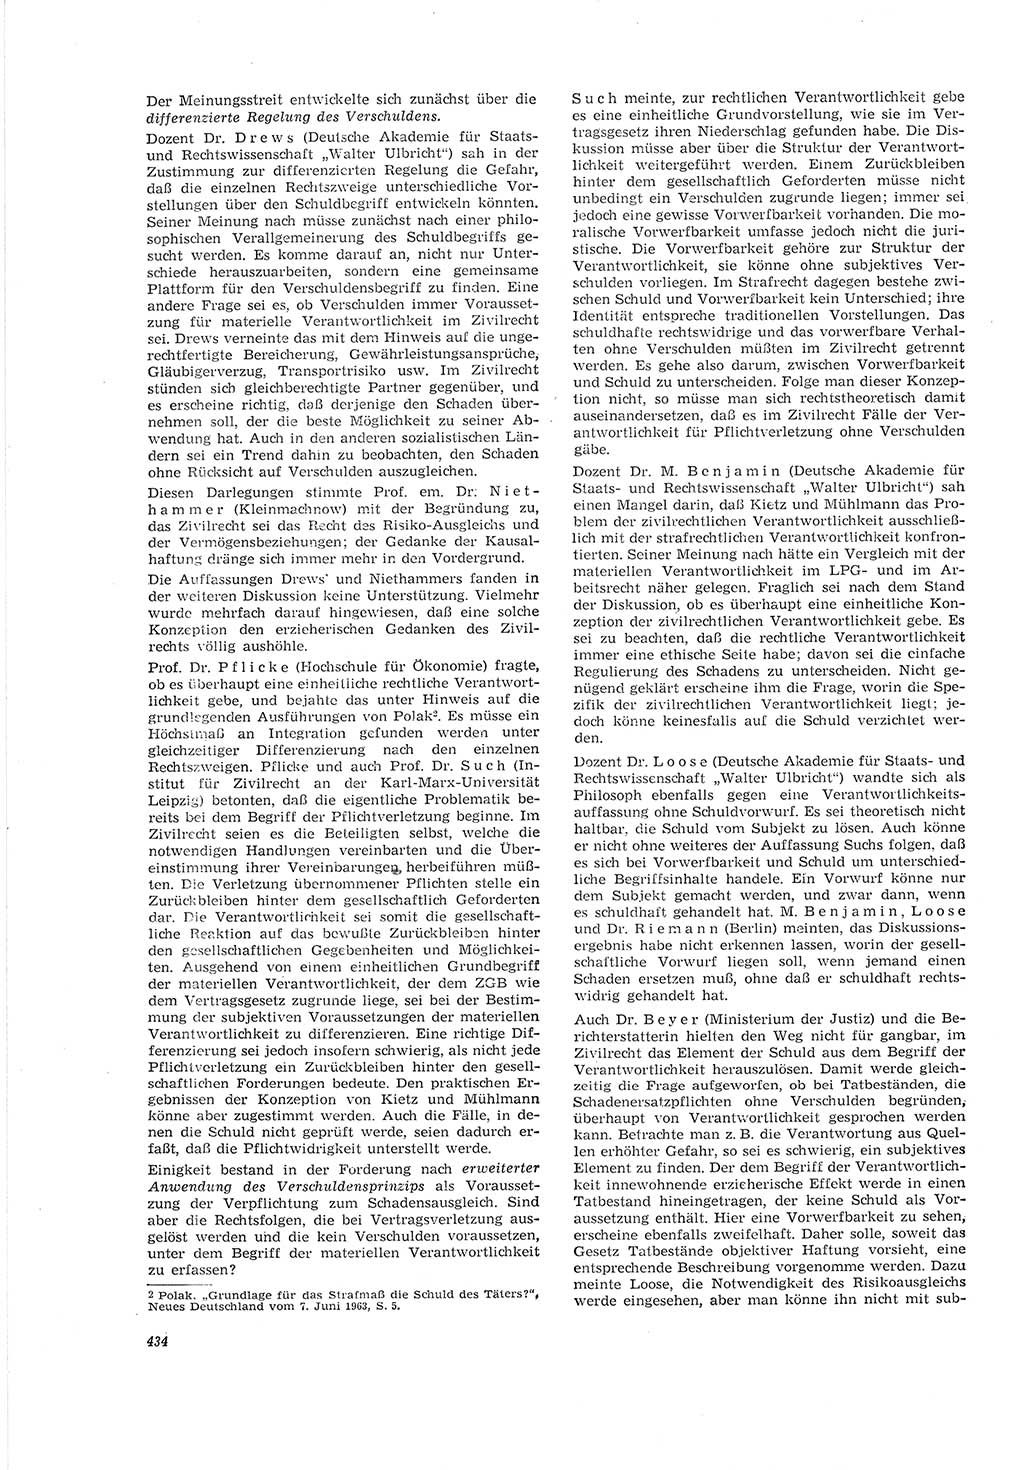 Neue Justiz (NJ), Zeitschrift für Recht und Rechtswissenschaft [Deutsche Demokratische Republik (DDR)], 20. Jahrgang 1966, Seite 434 (NJ DDR 1966, S. 434)